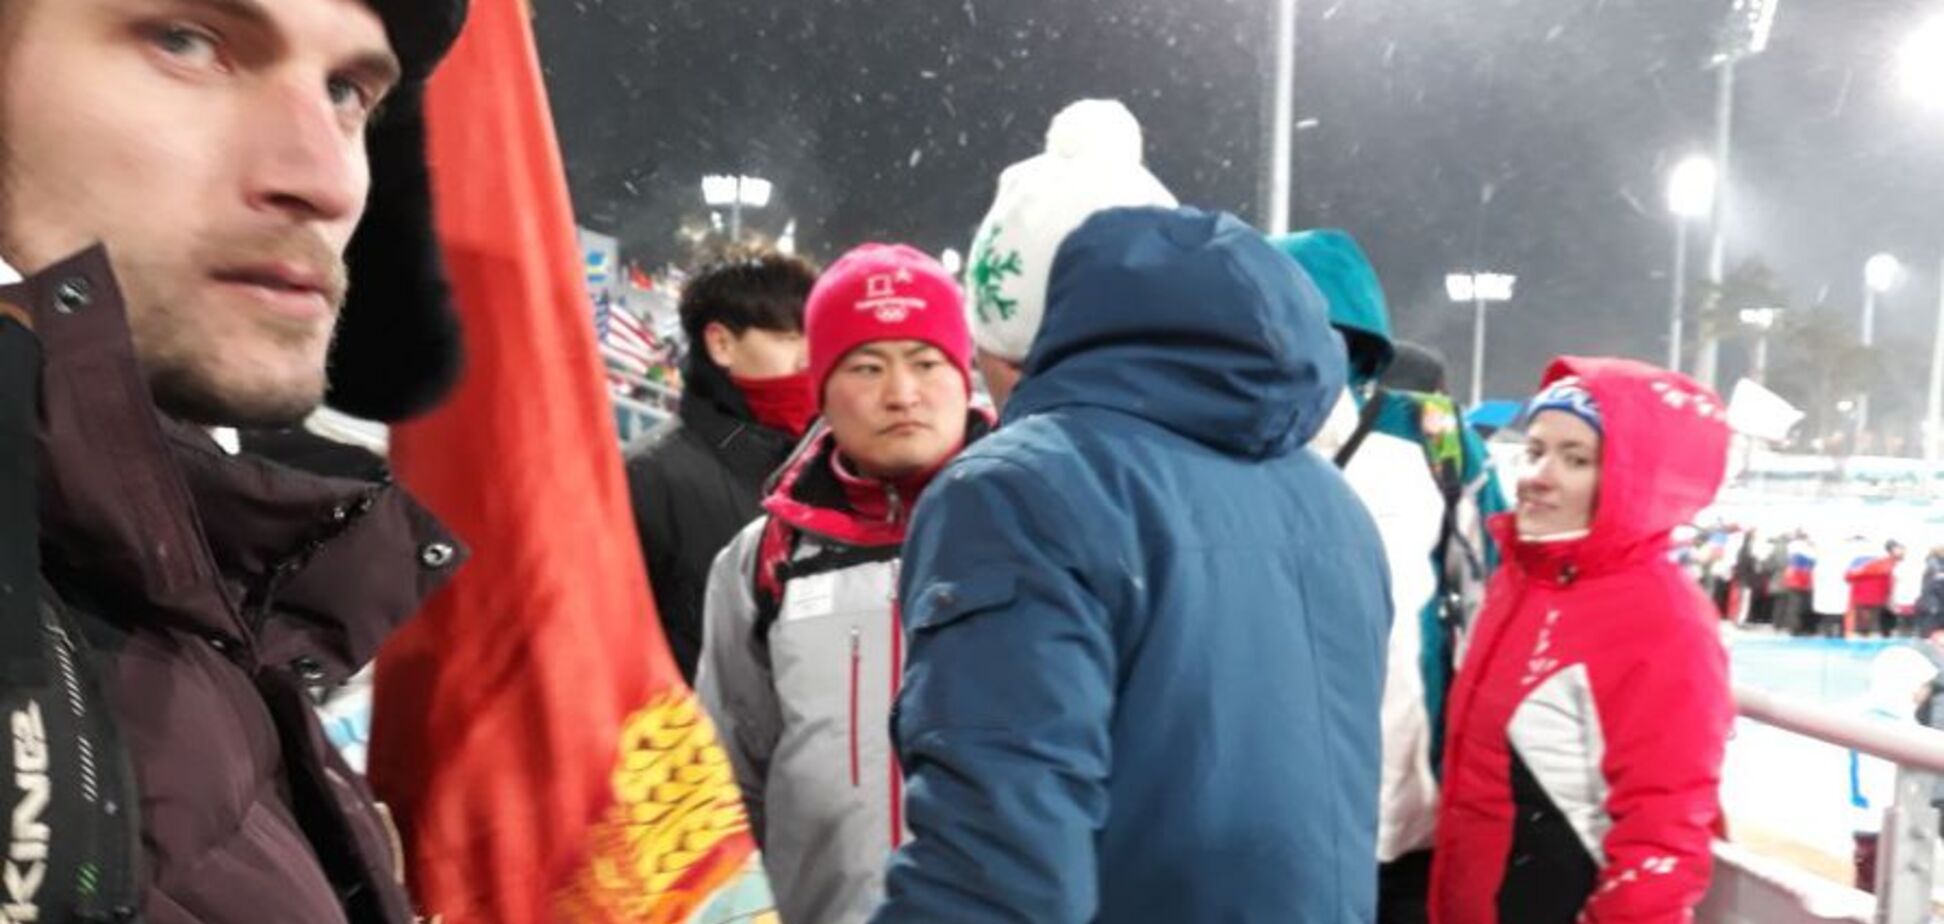 Олімпіада-2018: російських фанатів виставили зі стадіону через прапор комуністів - фото